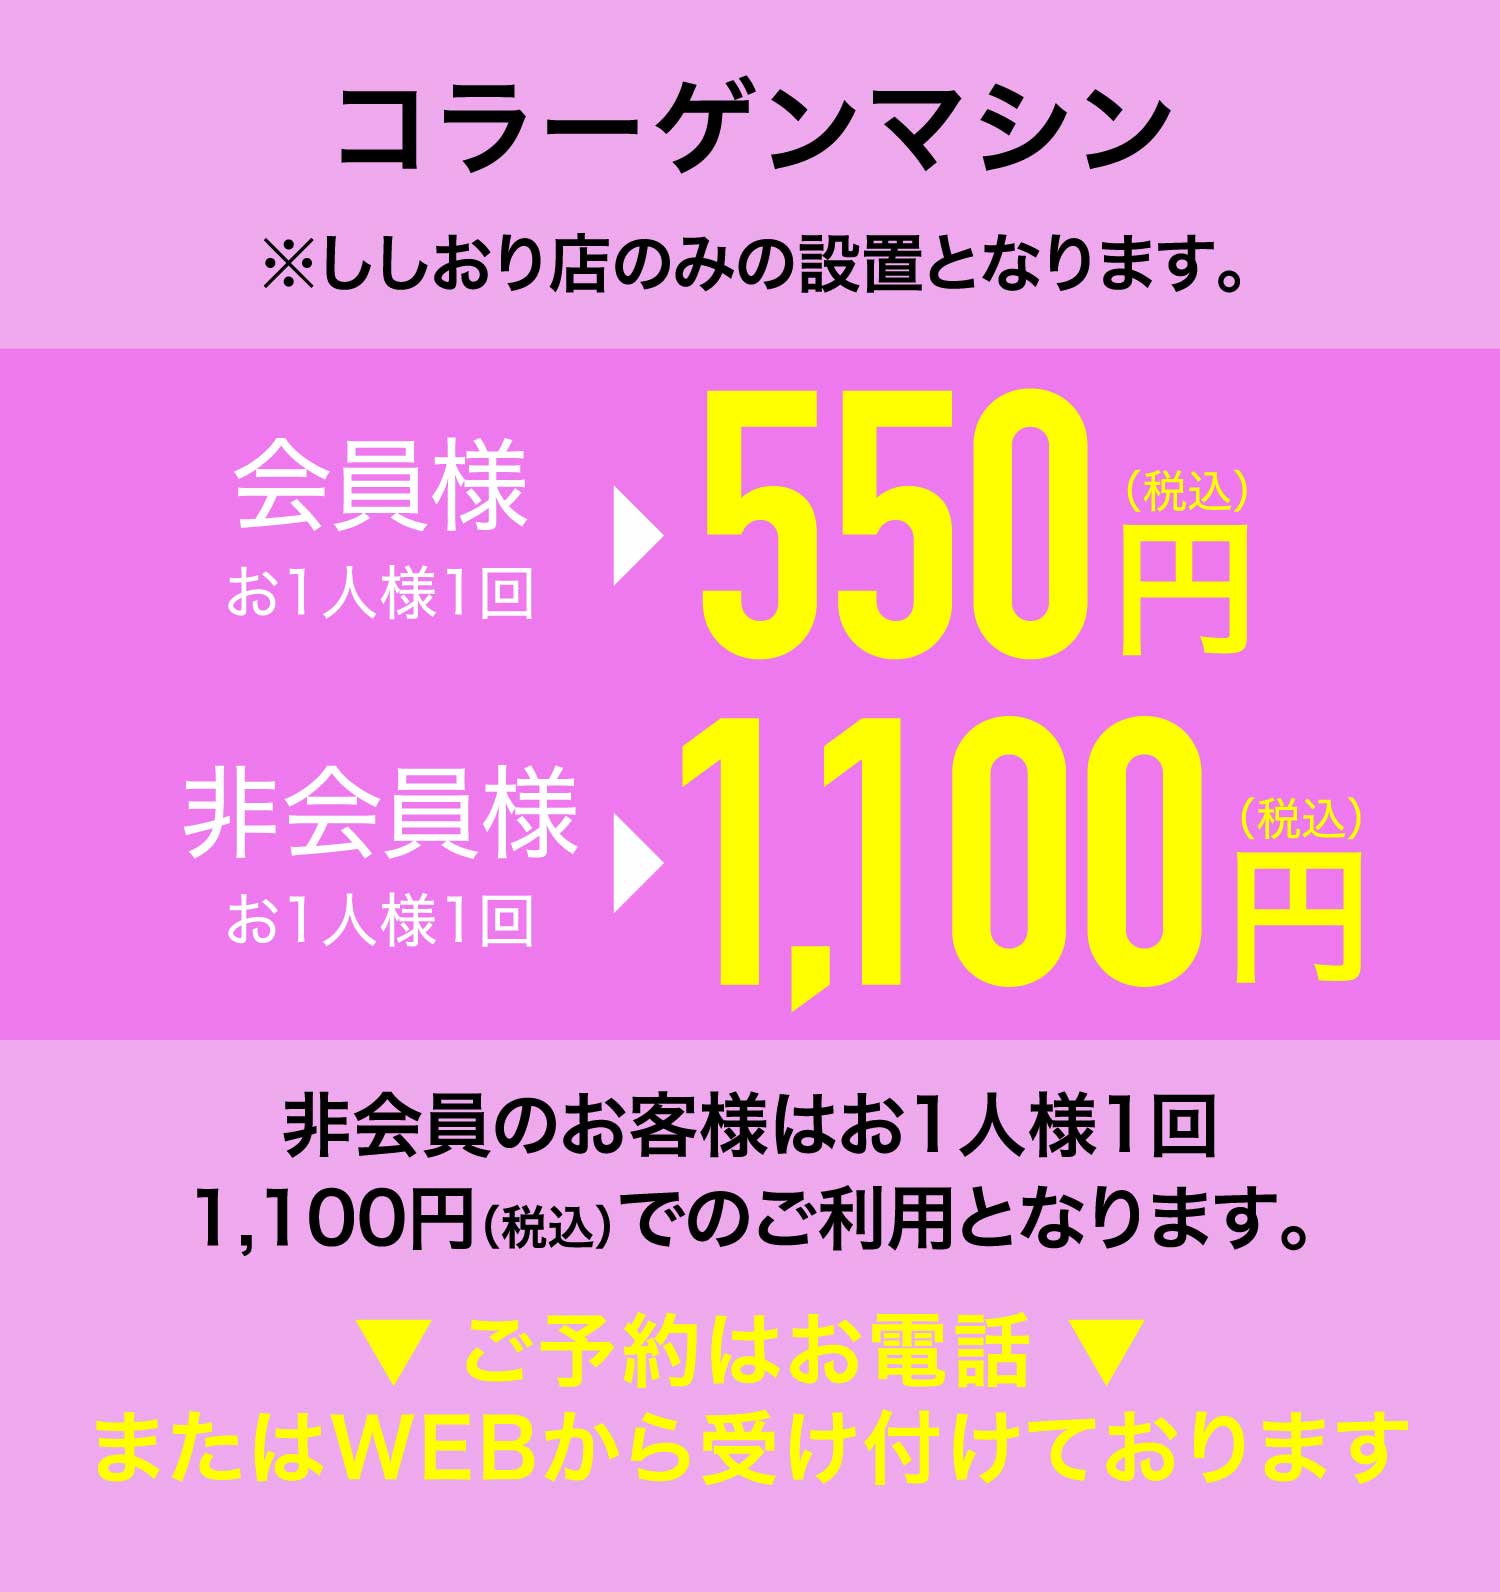 1100円割引キャンペーン